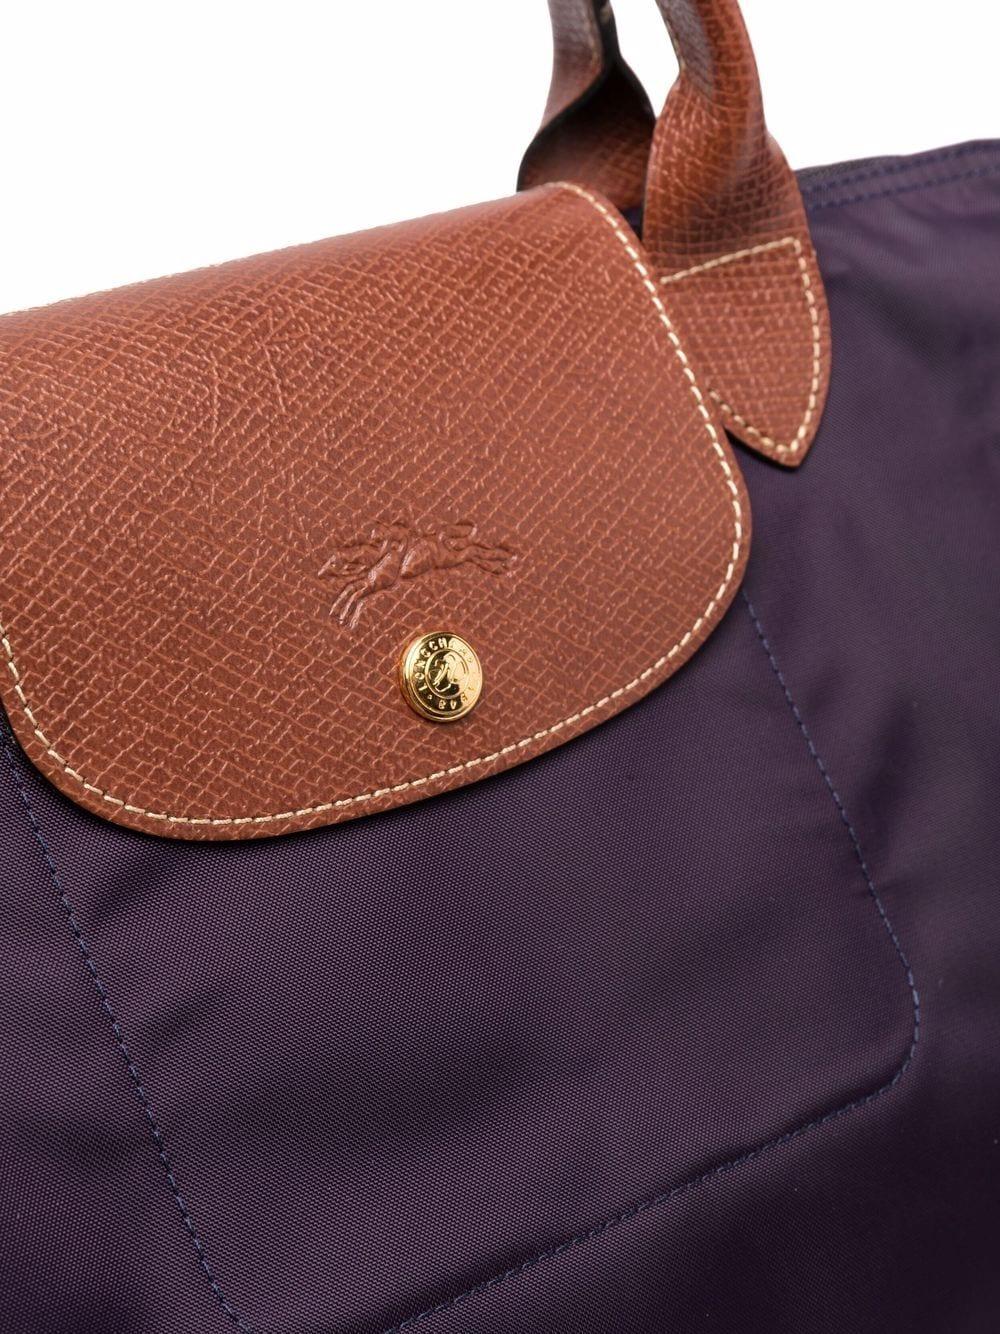 Longchamp Le Pliage Original Travel Bag in Purple | Lyst